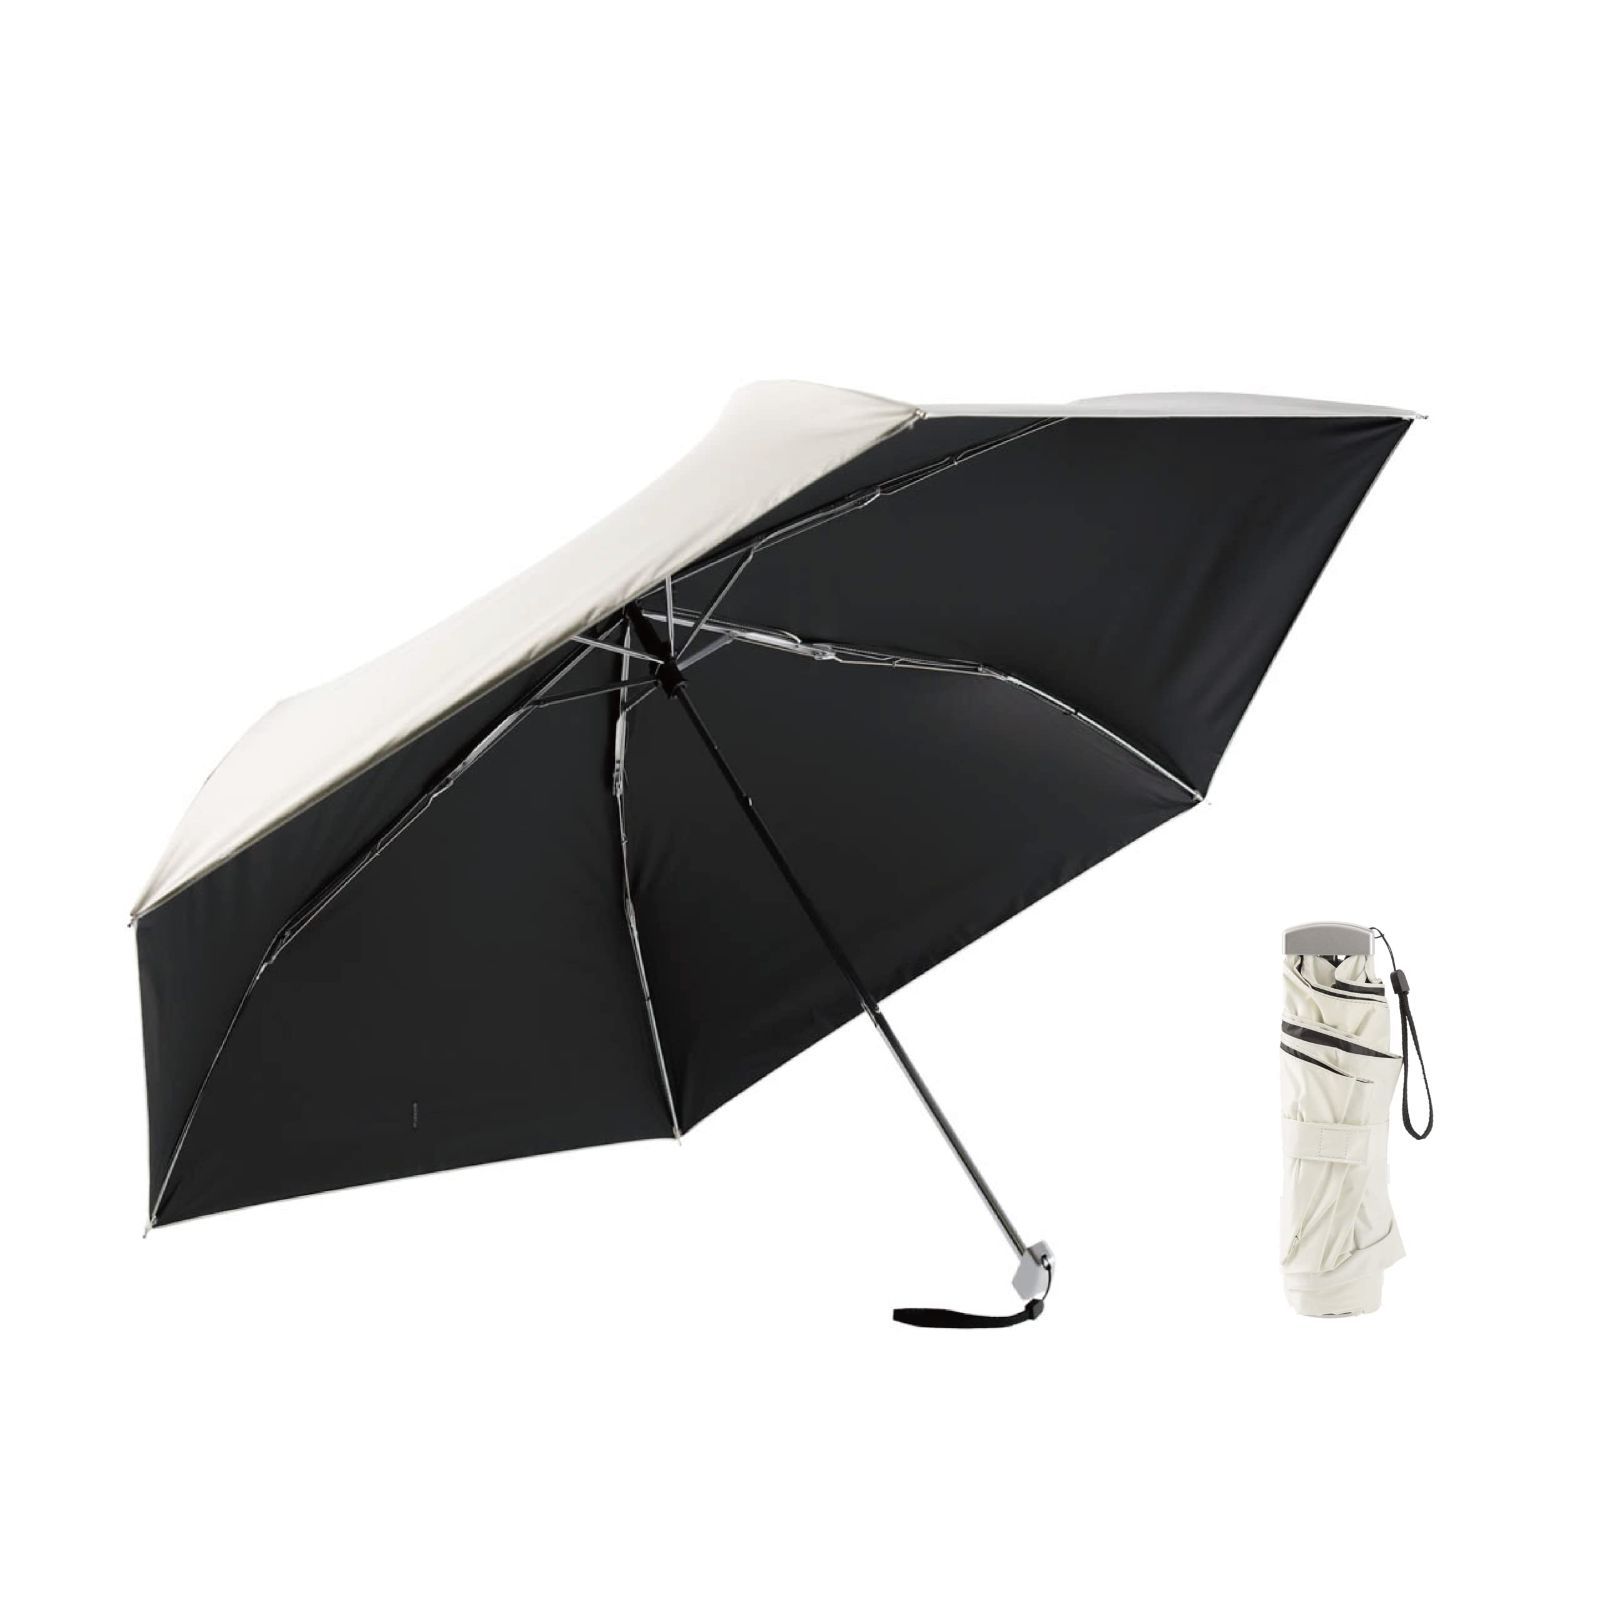 【新着商品】青空工房 日傘 極細 UVカット100 遮光 晴雨兼用 折りたたみ傘